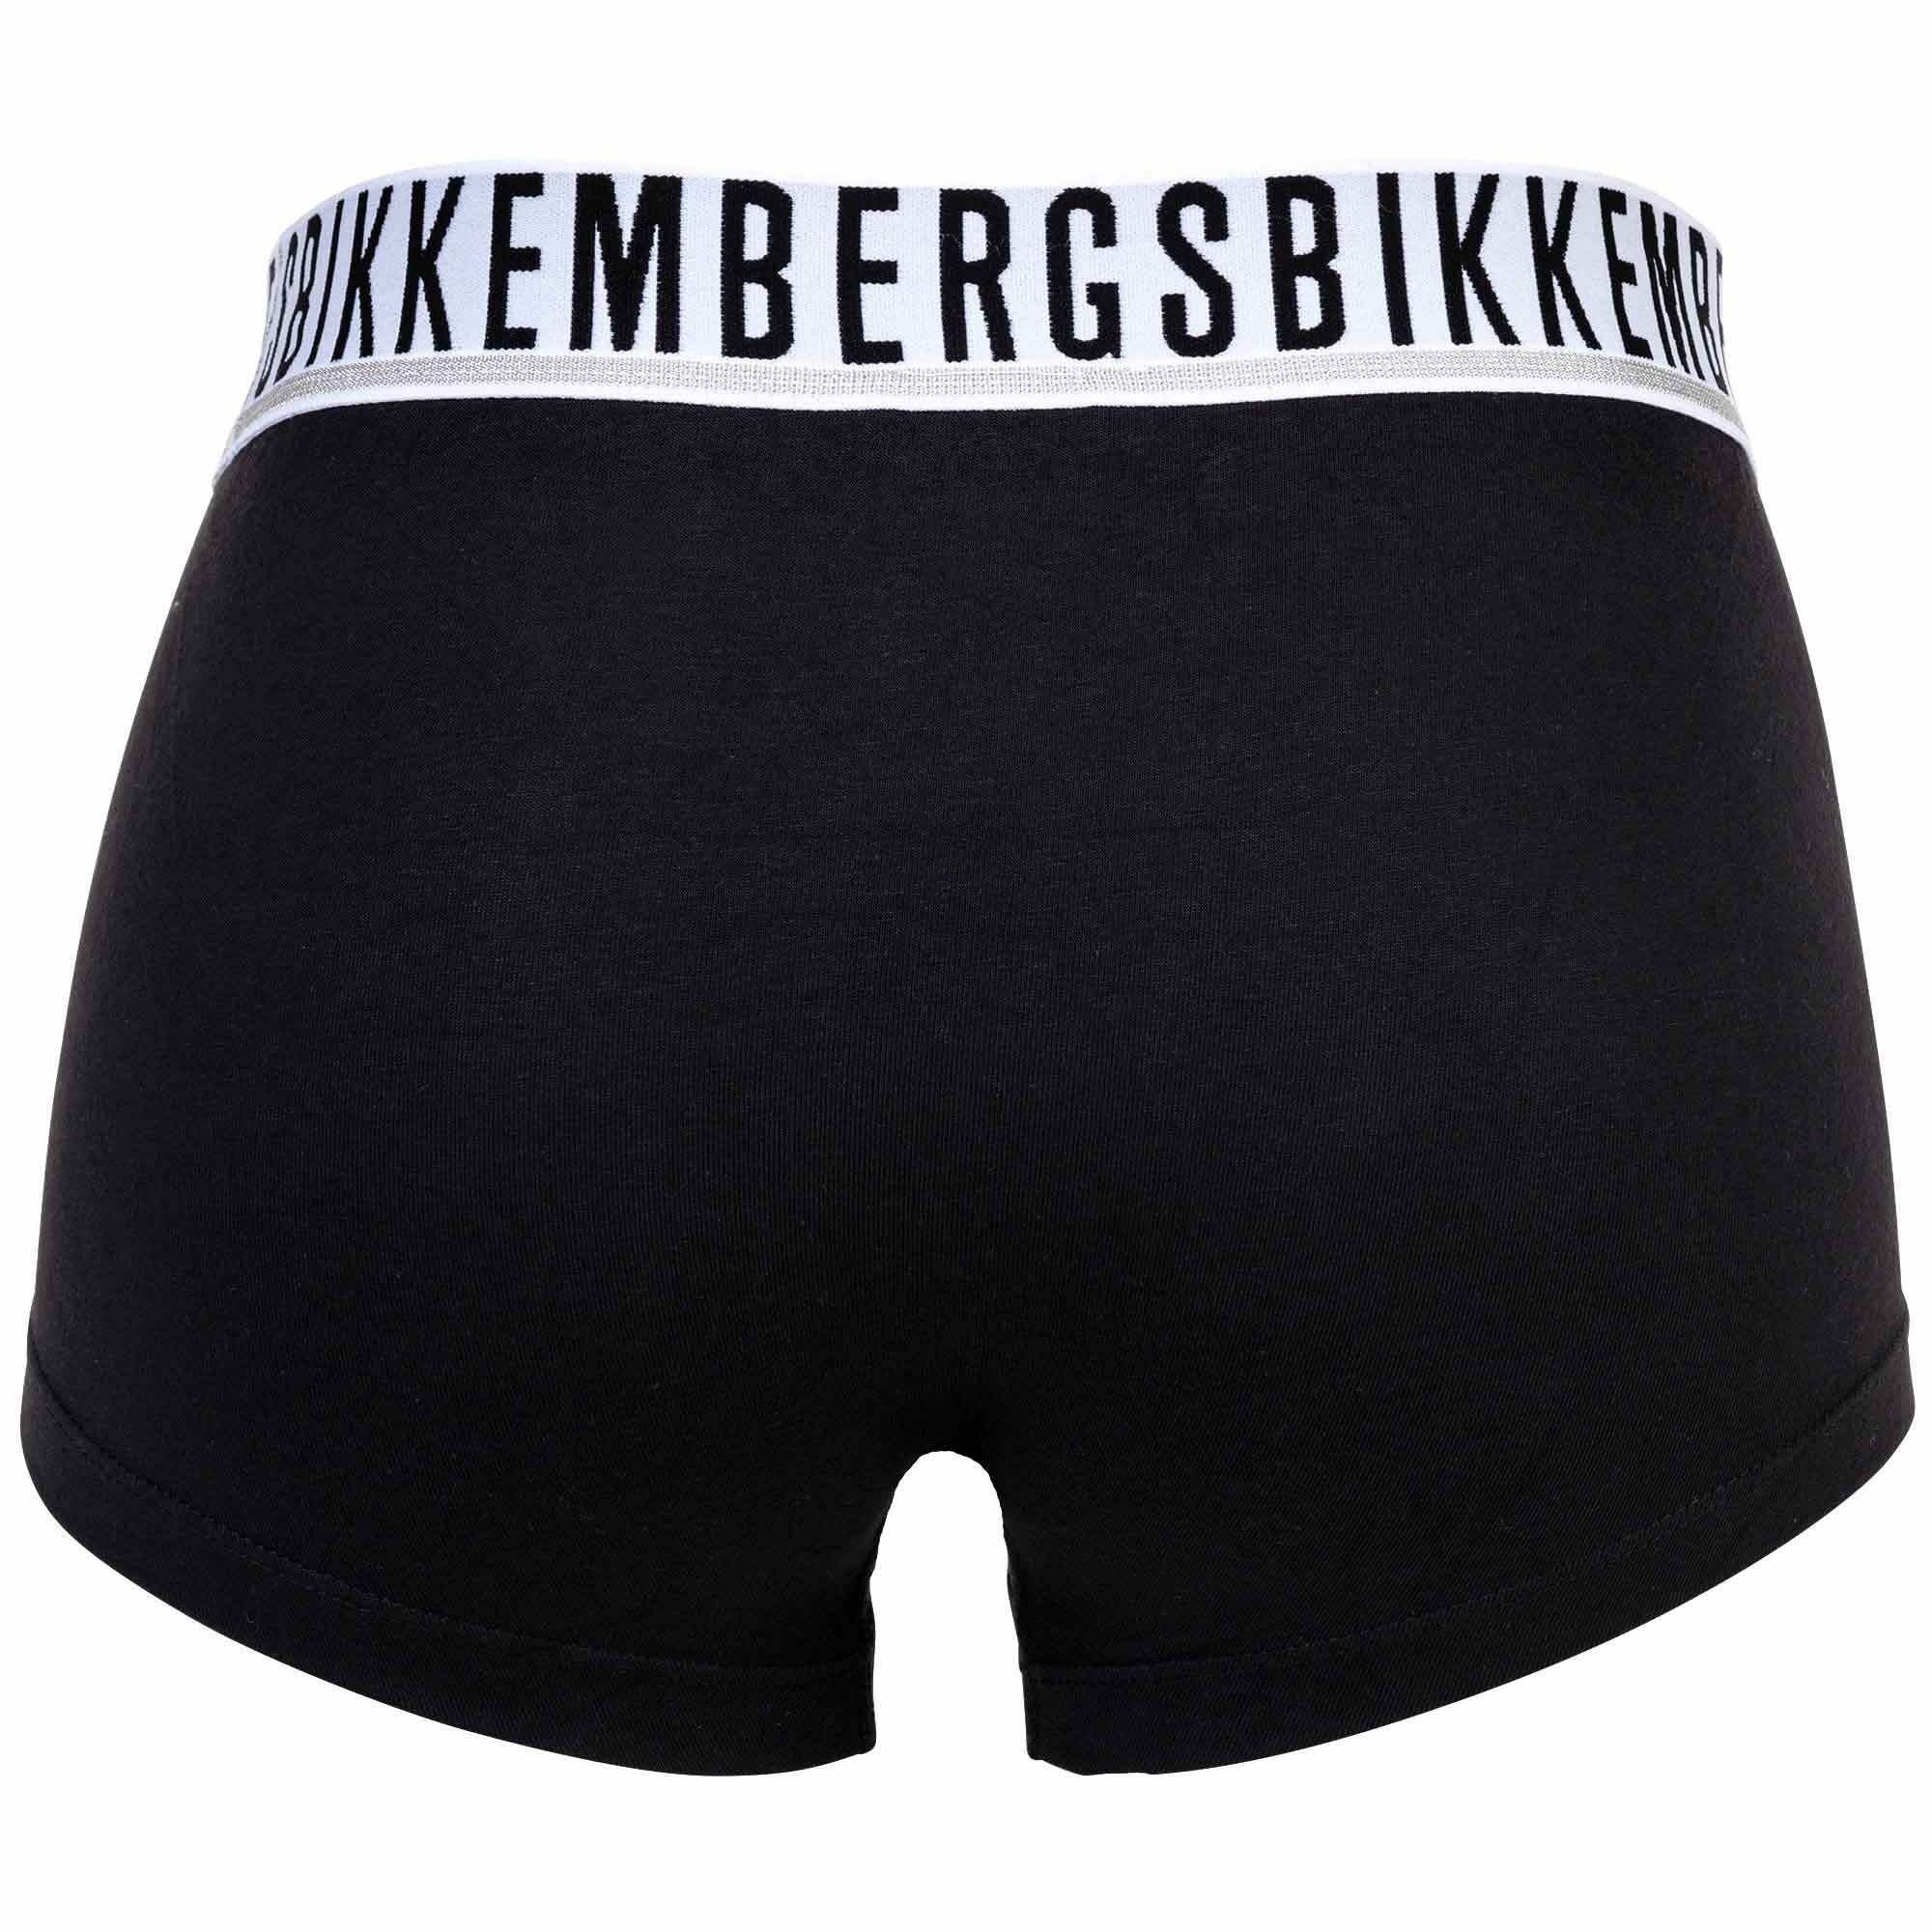 Boxer Herren TRUNKS Pack - 2er Bikkembergs Schwarz BI-PACK Boxershorts,